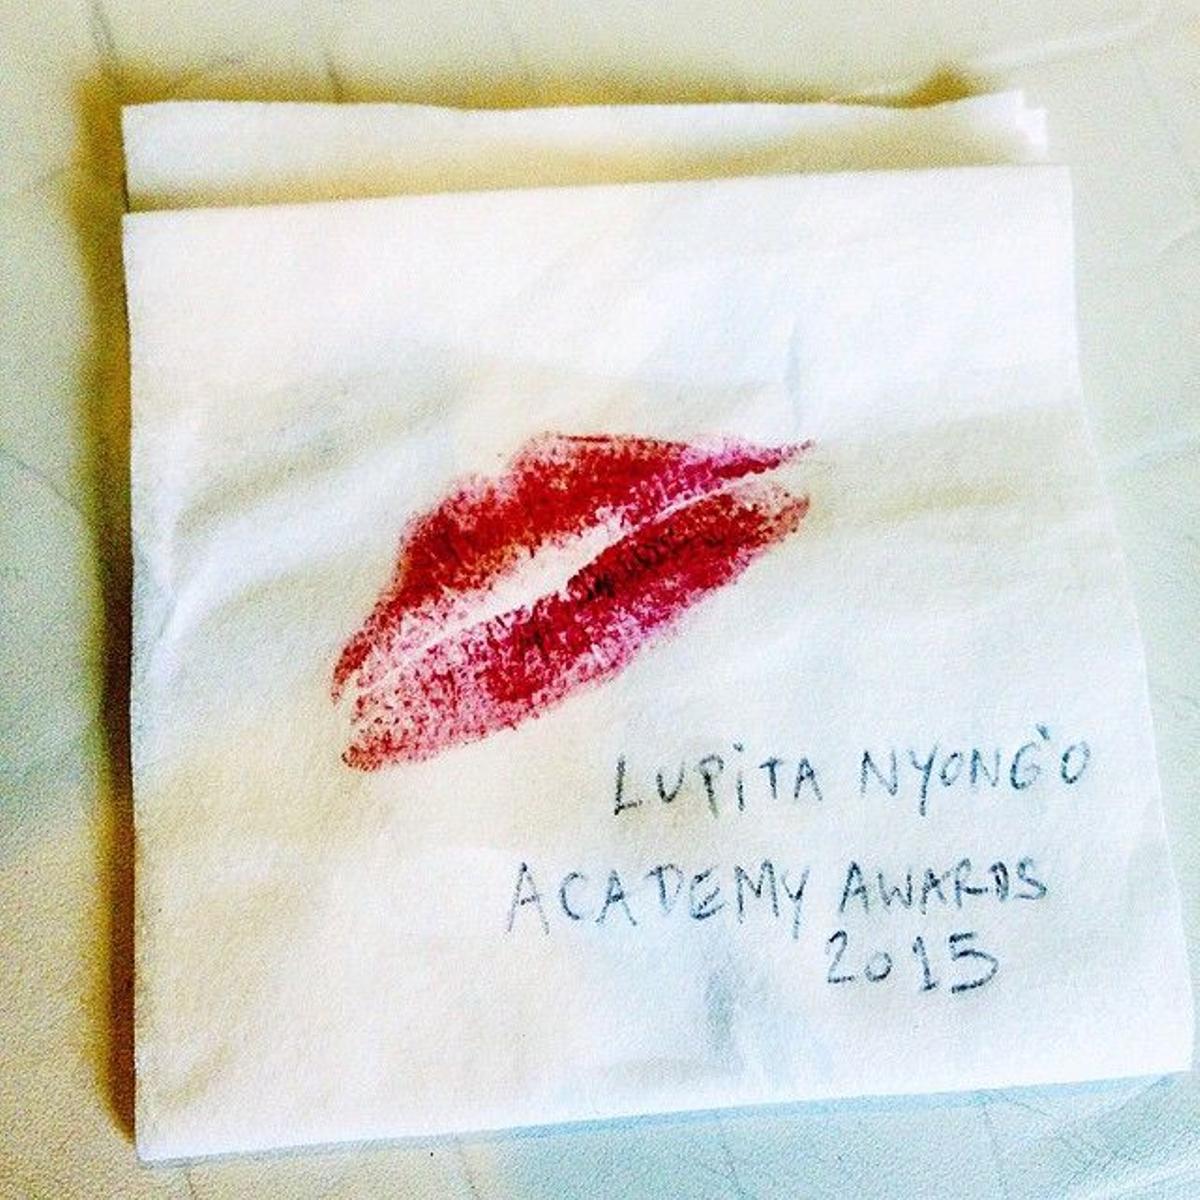 Los besos de Lupita Nyong'o